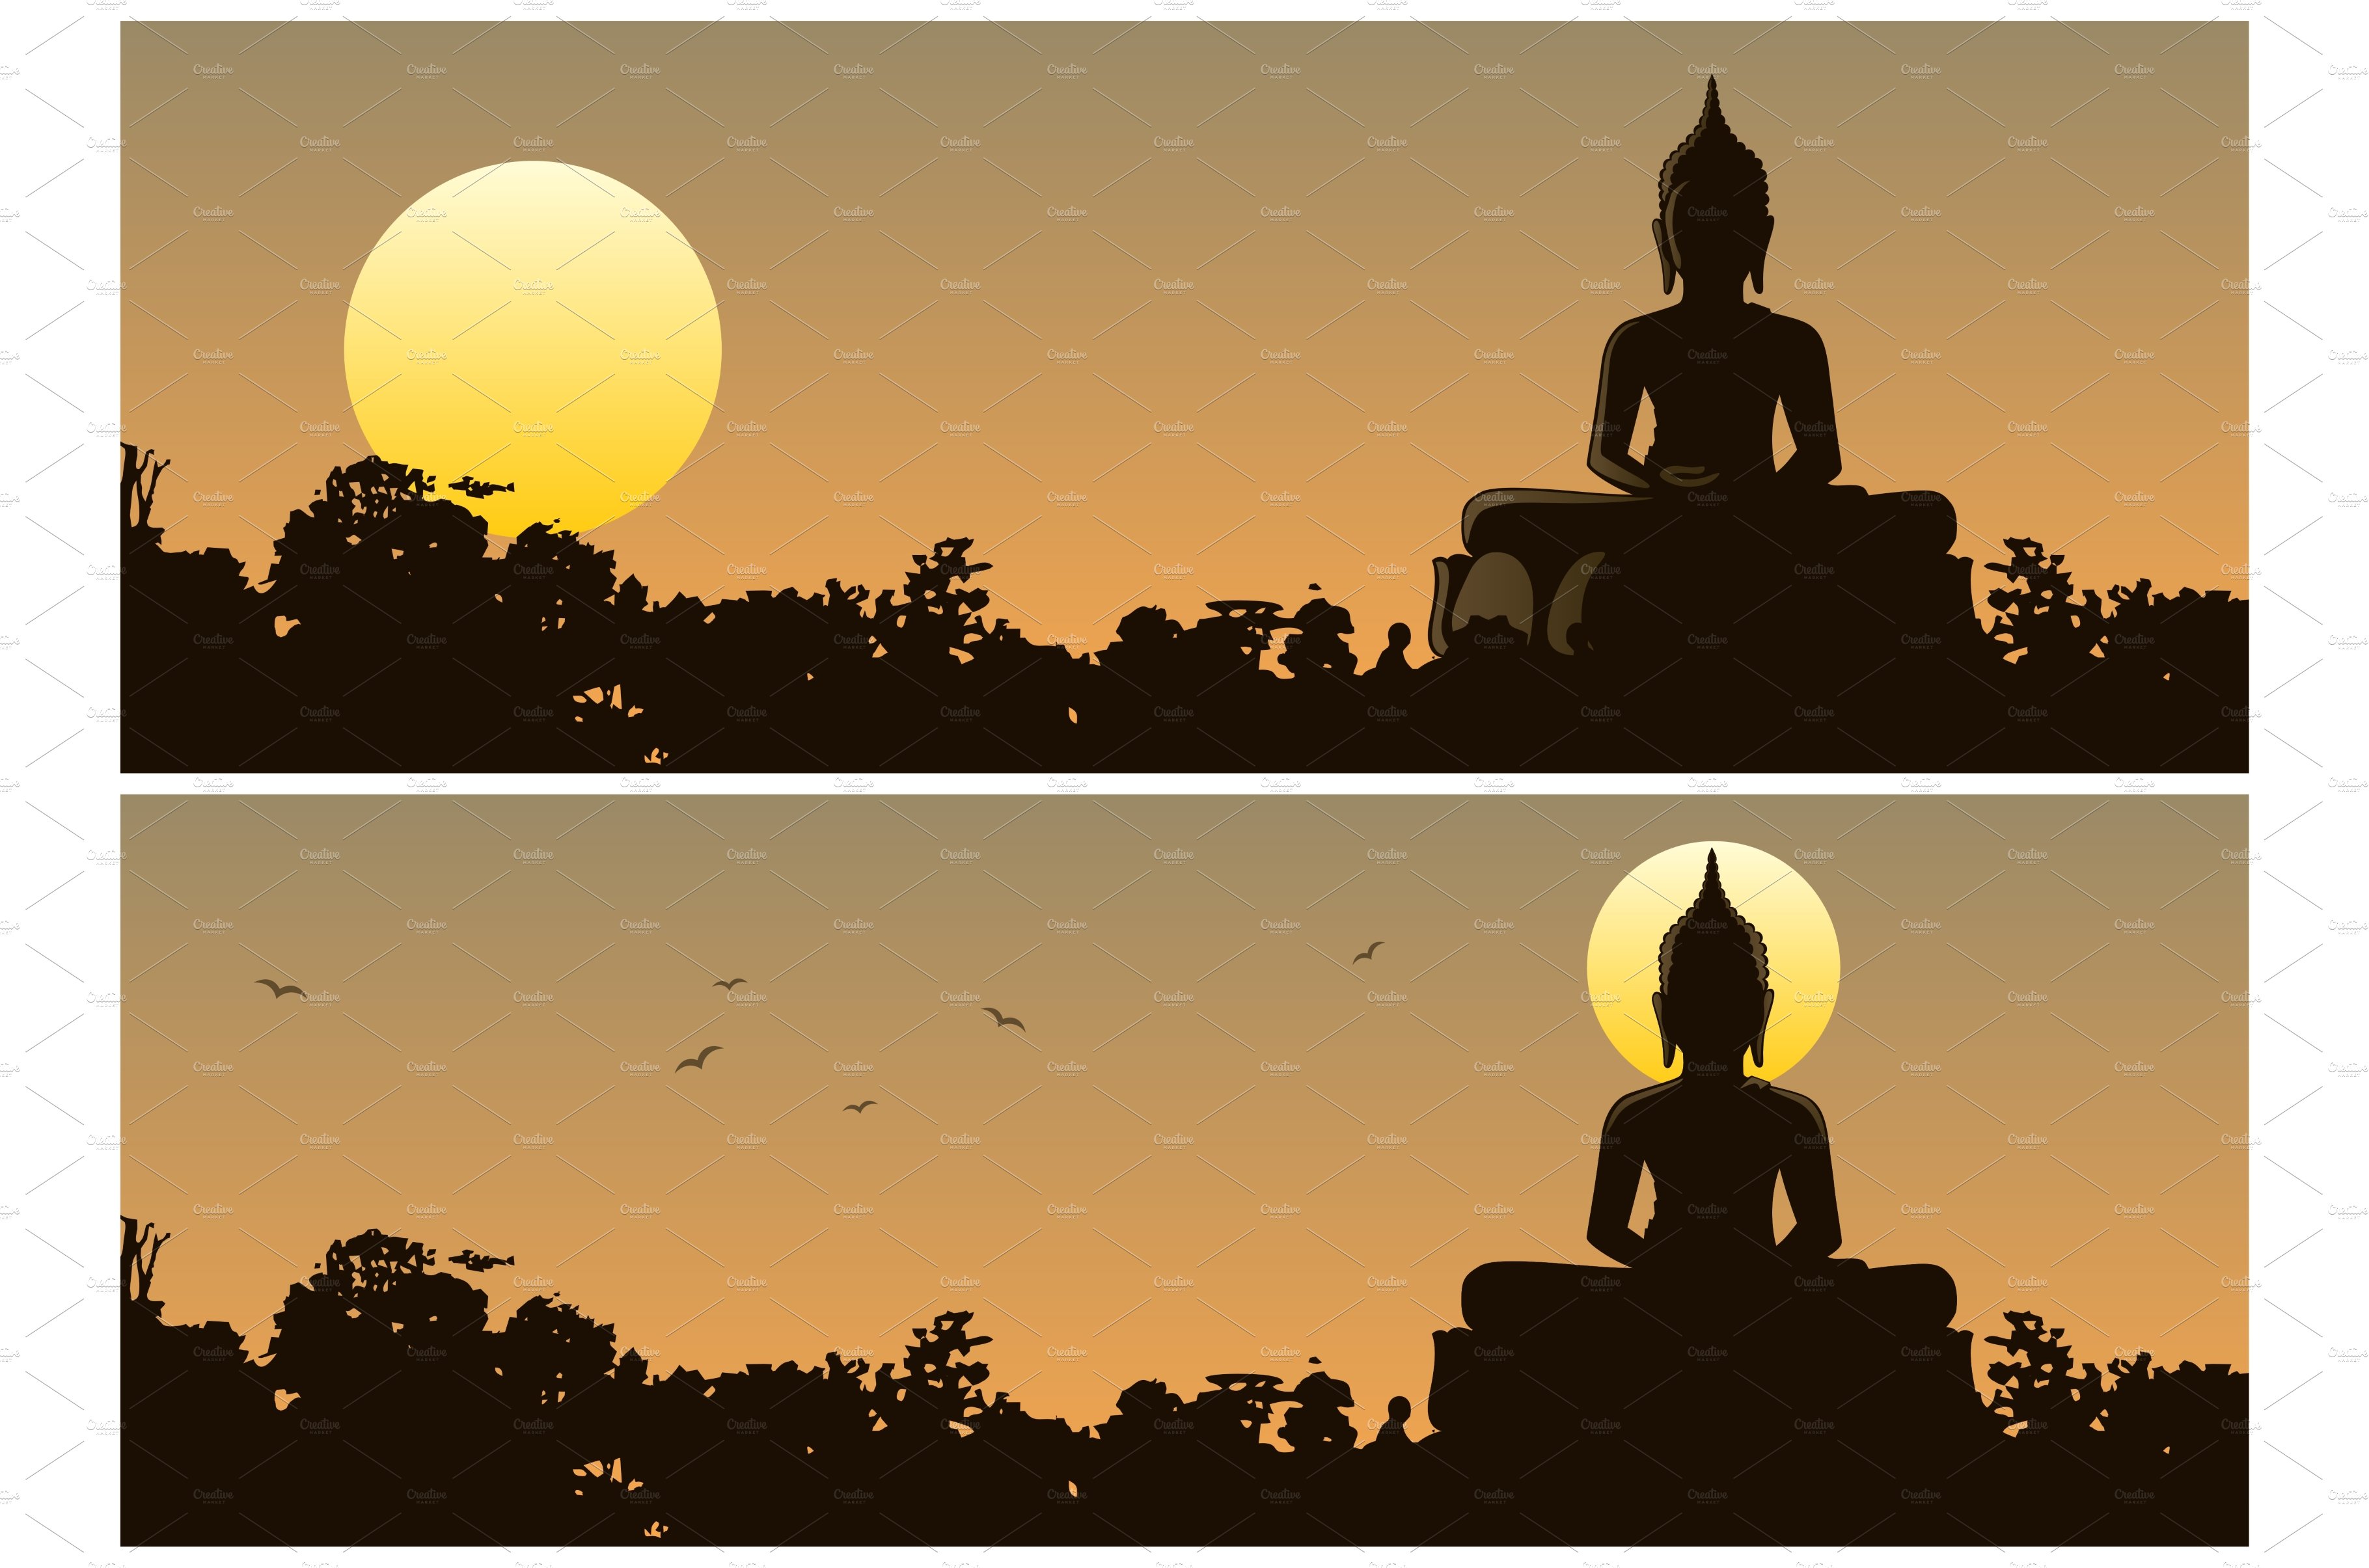 Buddha Sunset cover image.